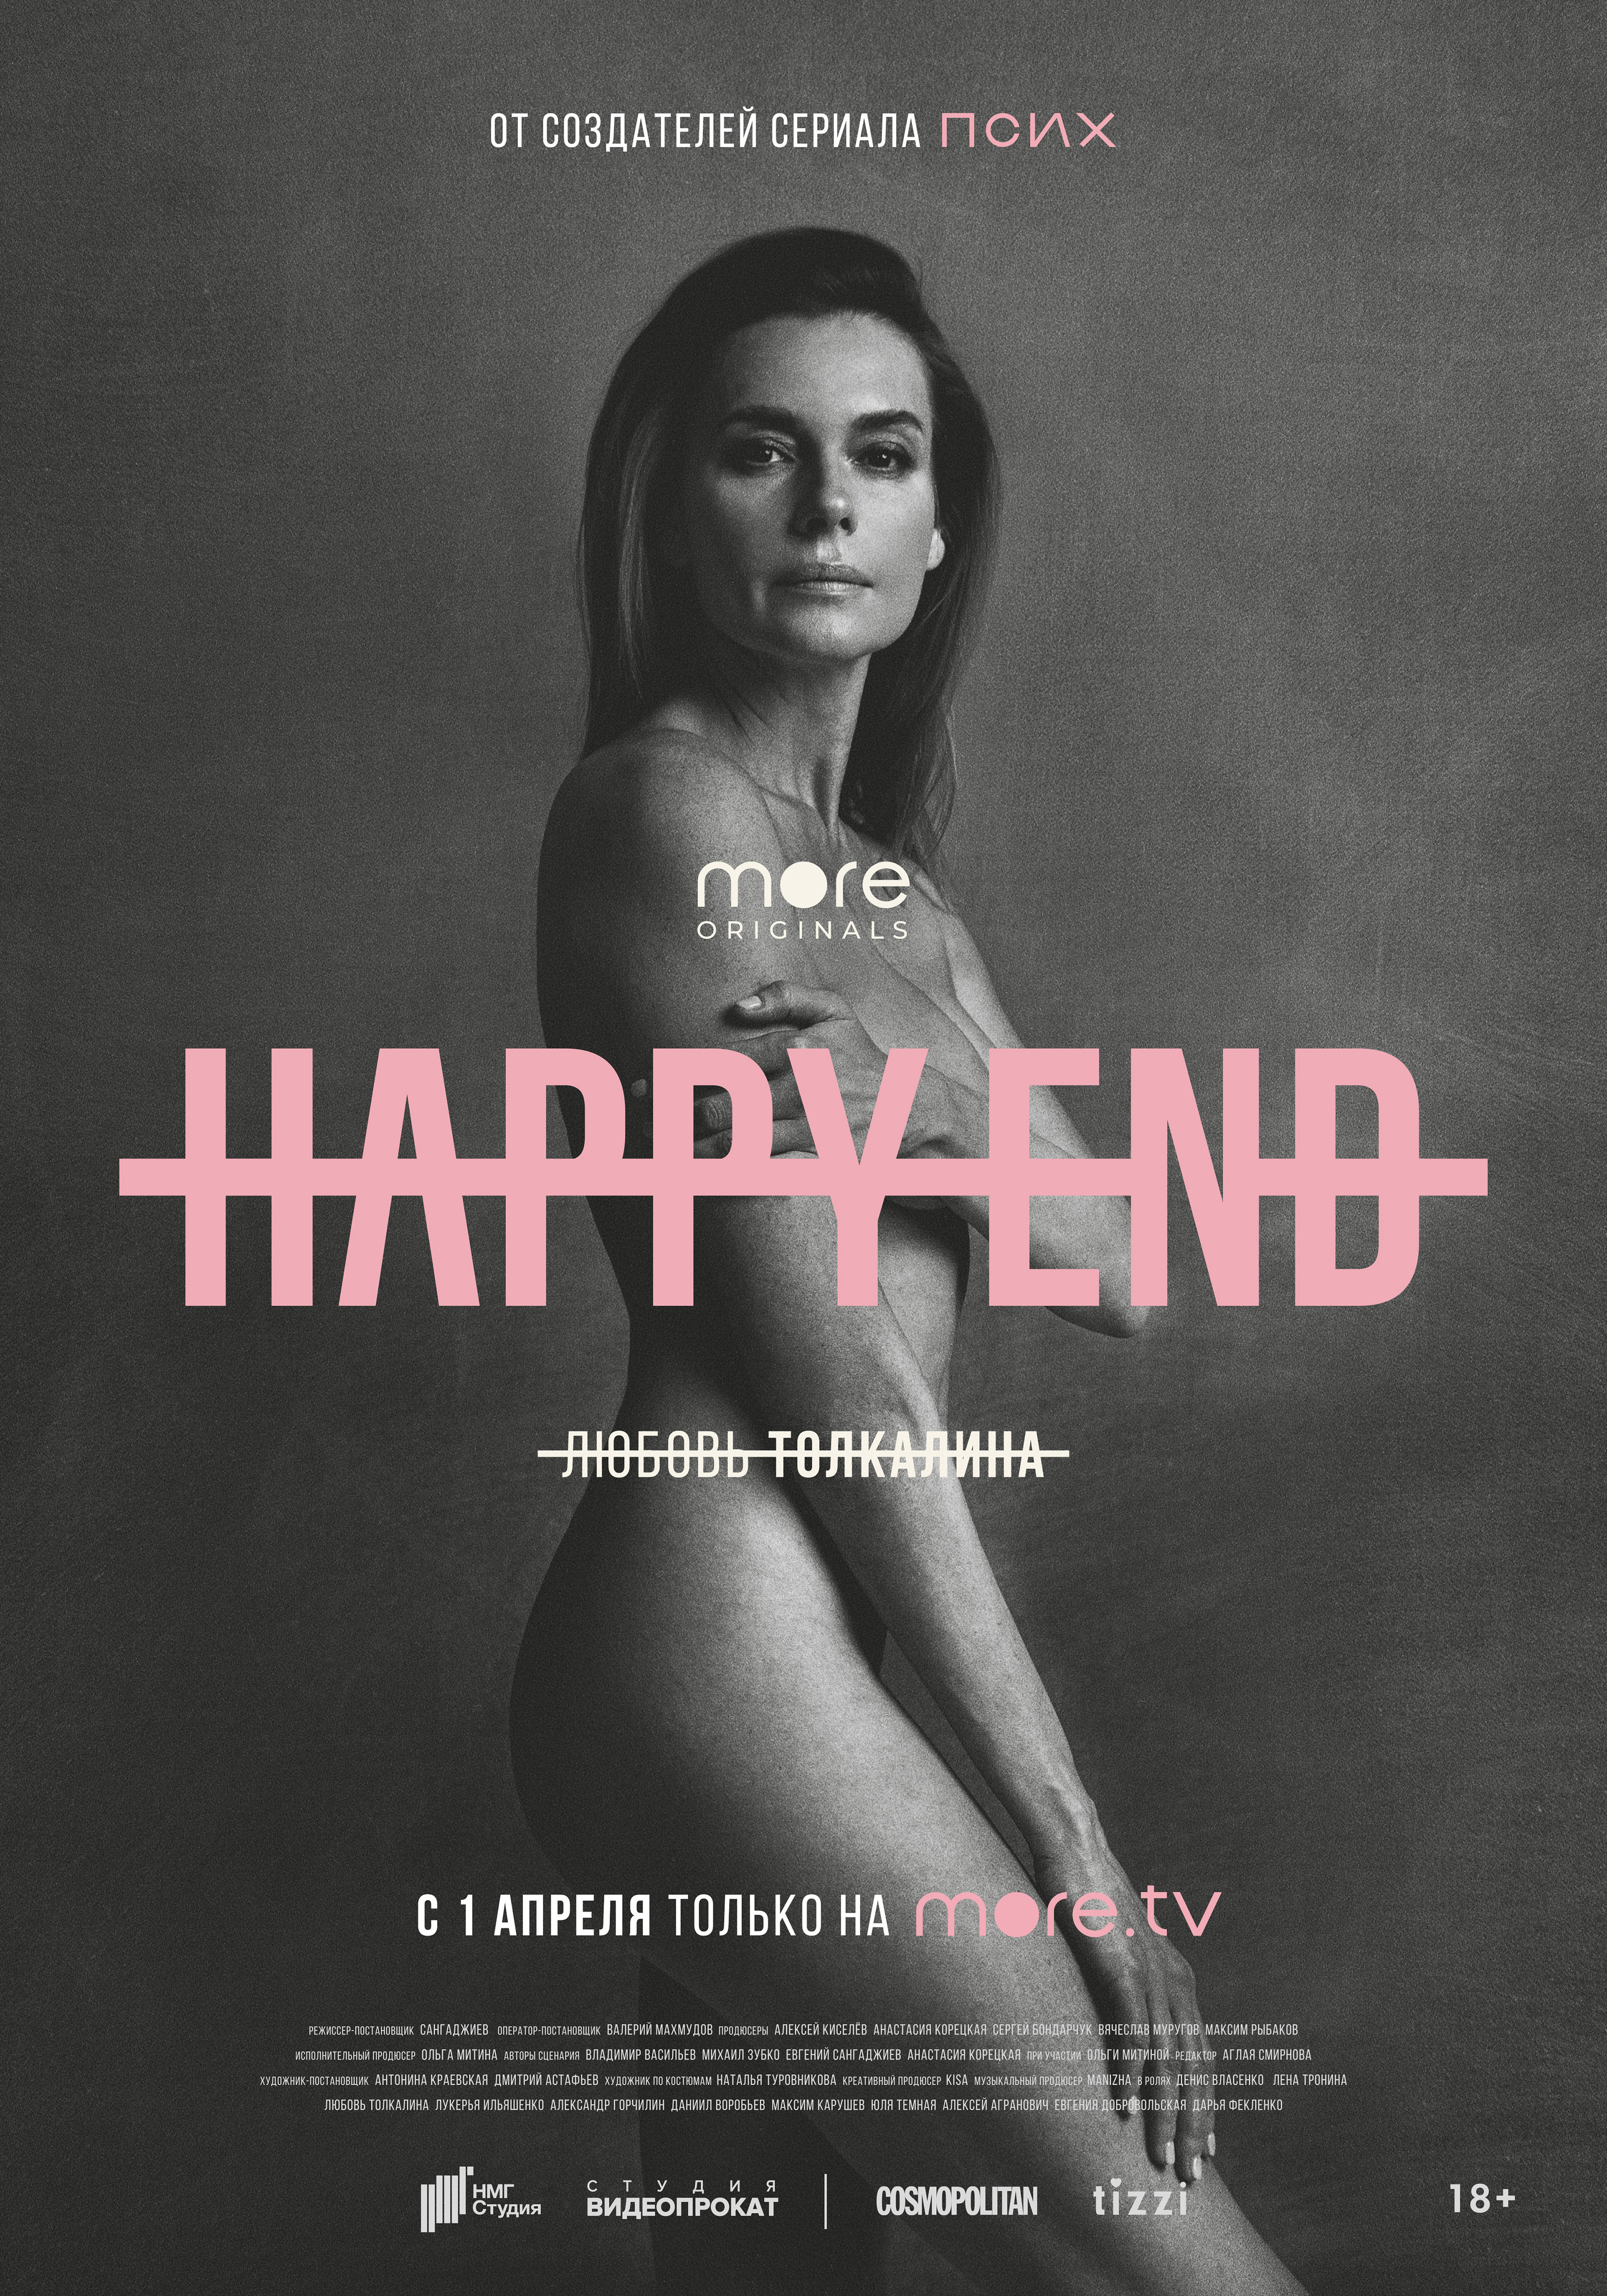 Постер сериала "Happy End" .